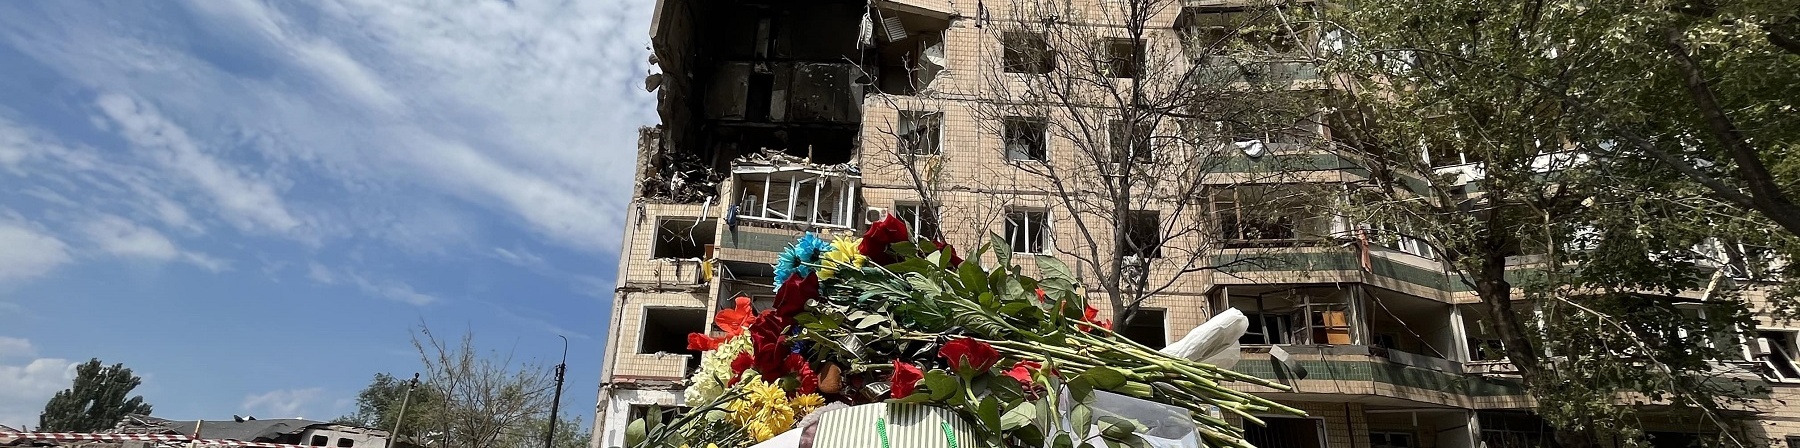 Palazzo distrutto con fiori e bambole in primo piano 